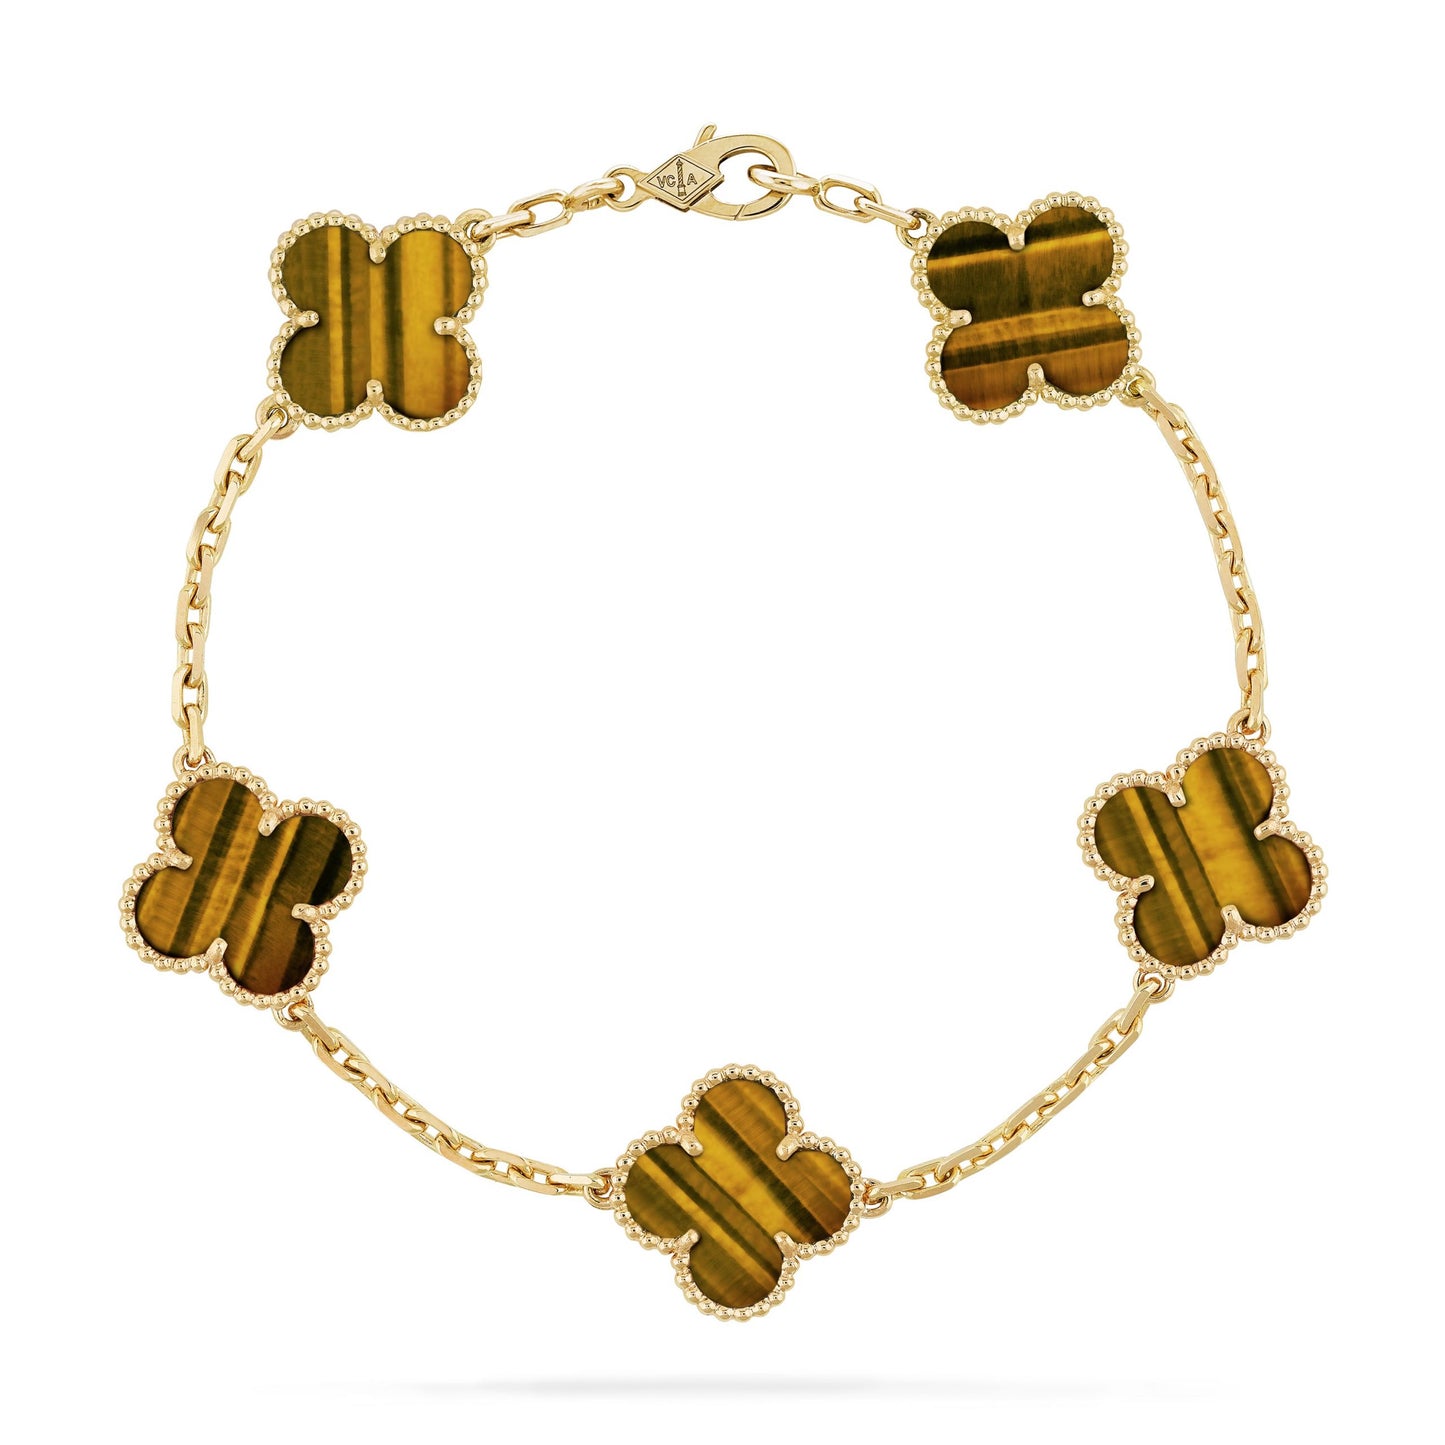 Gold Clover Bracelet - Elegance & Luck in Every Link